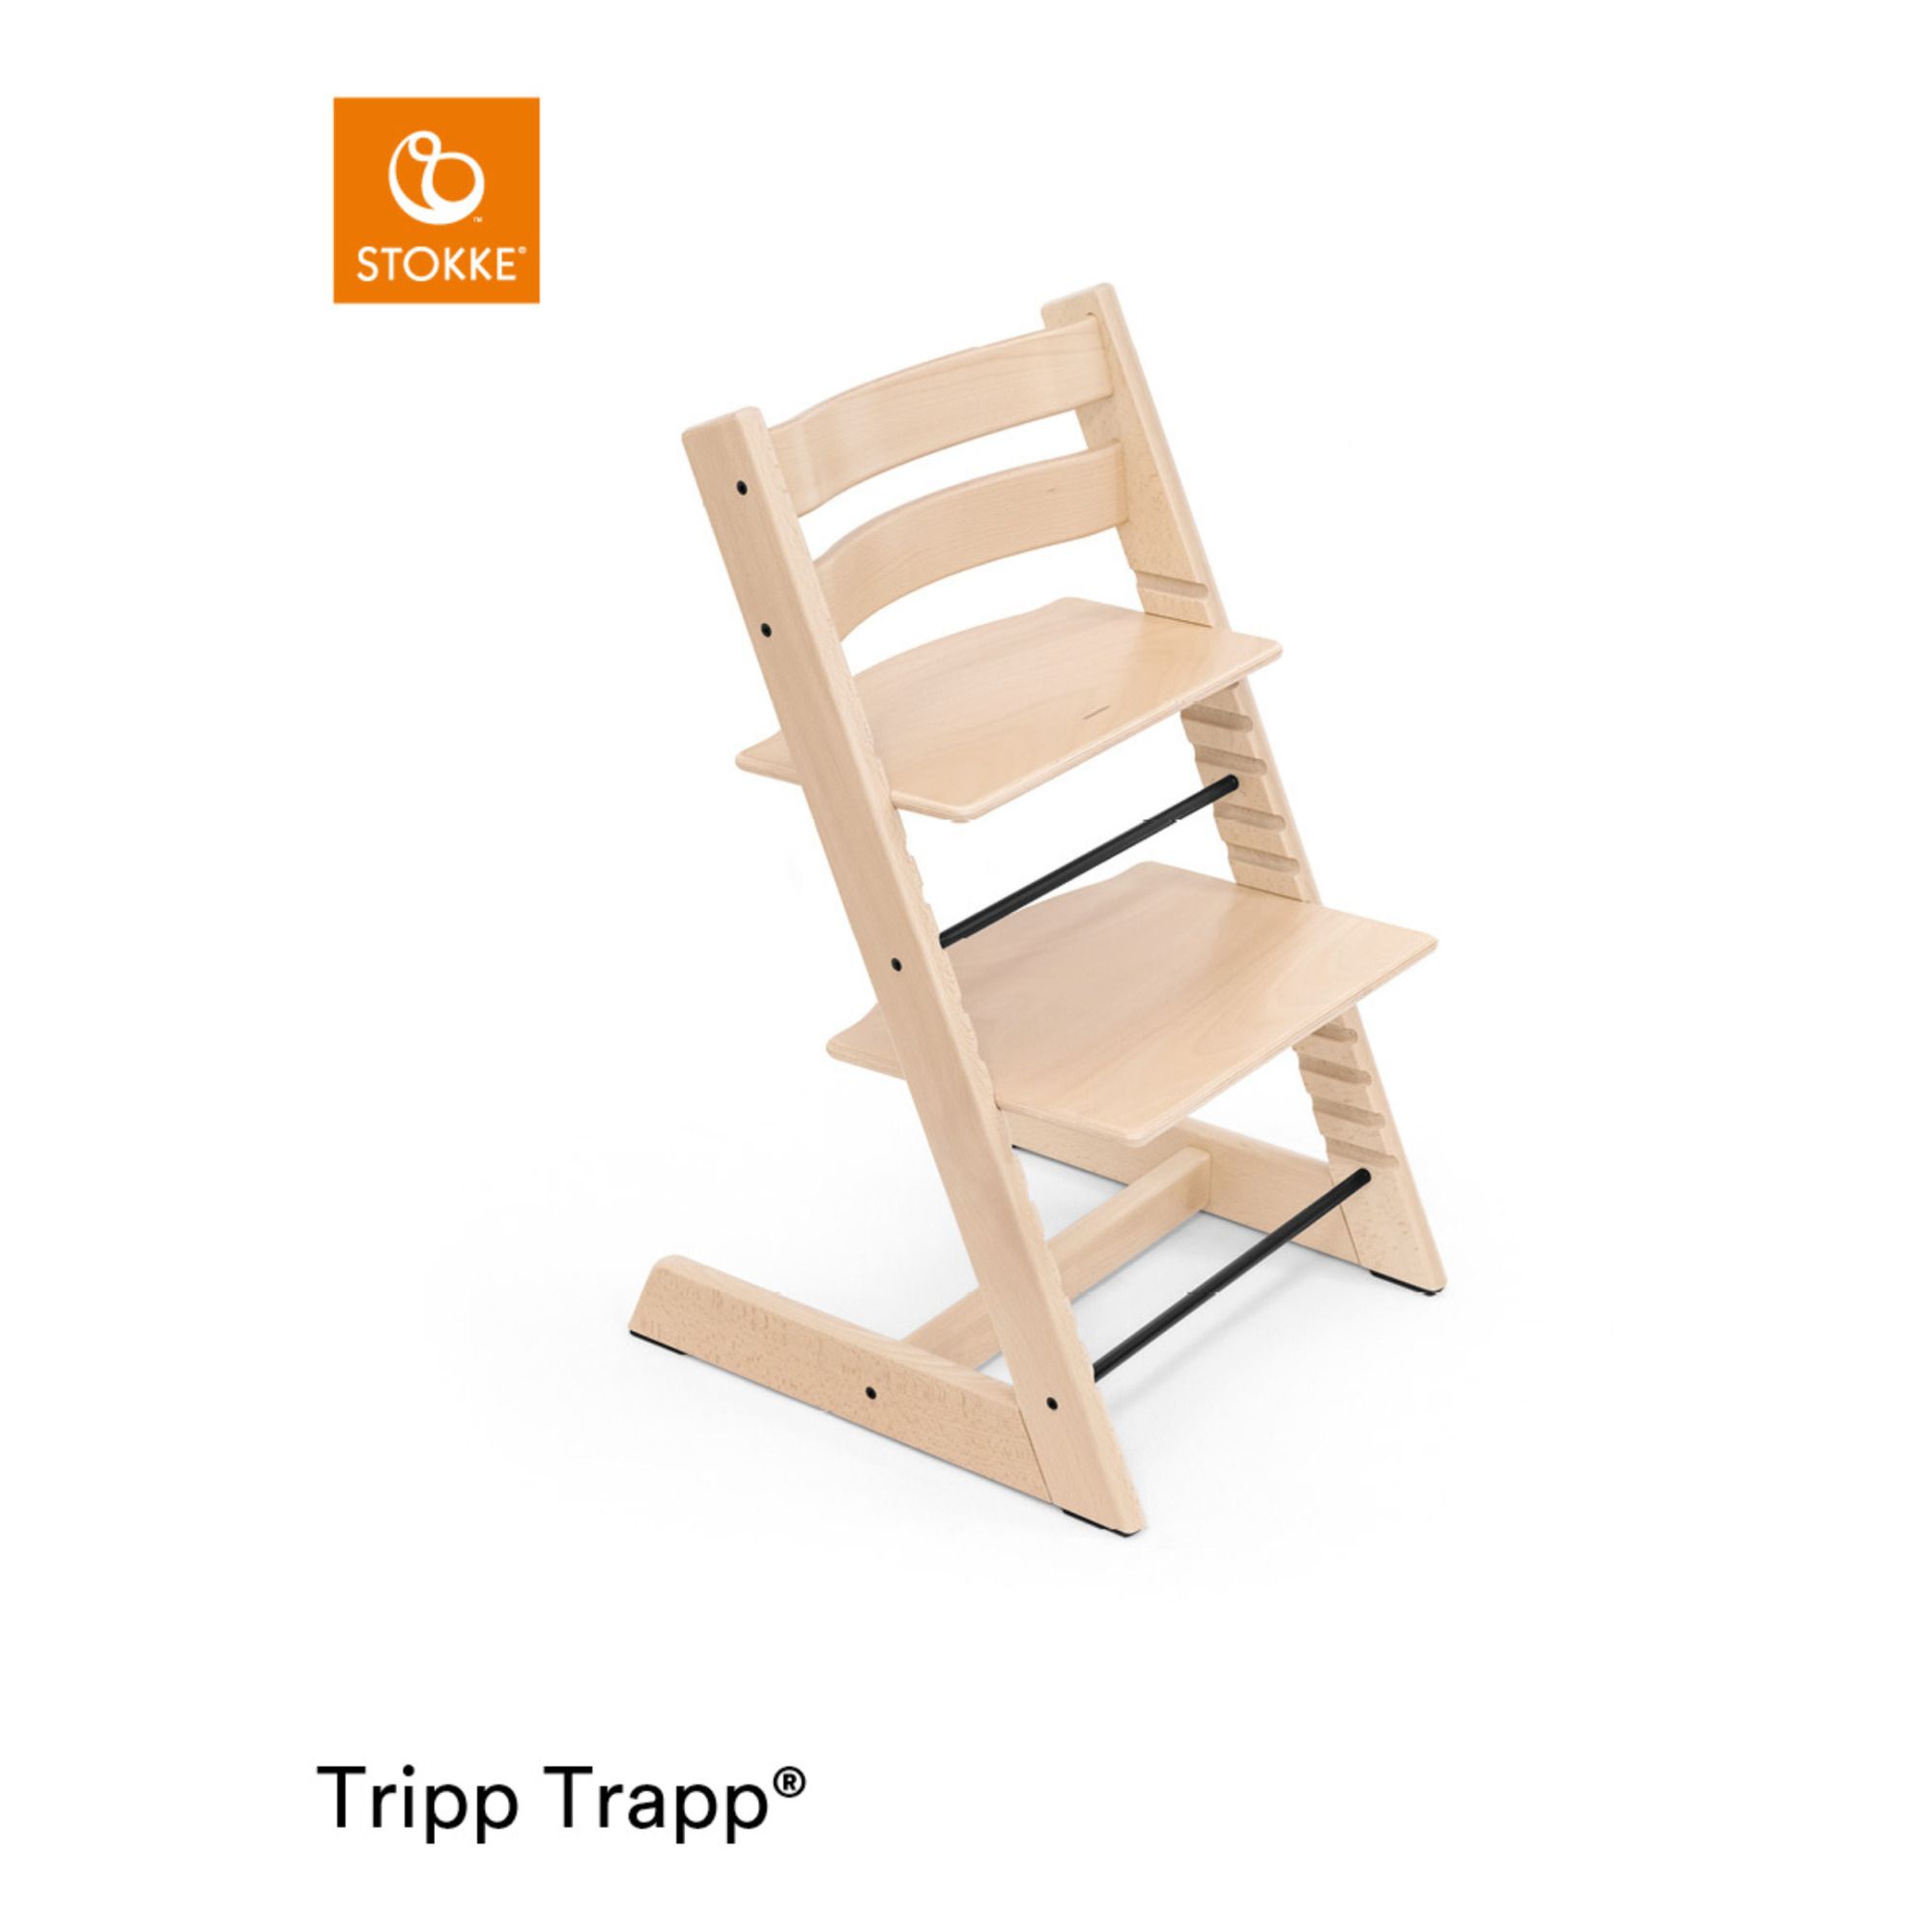 Chaise haute en hêtre Tripp Trapp® (Stokke®) - Image 1